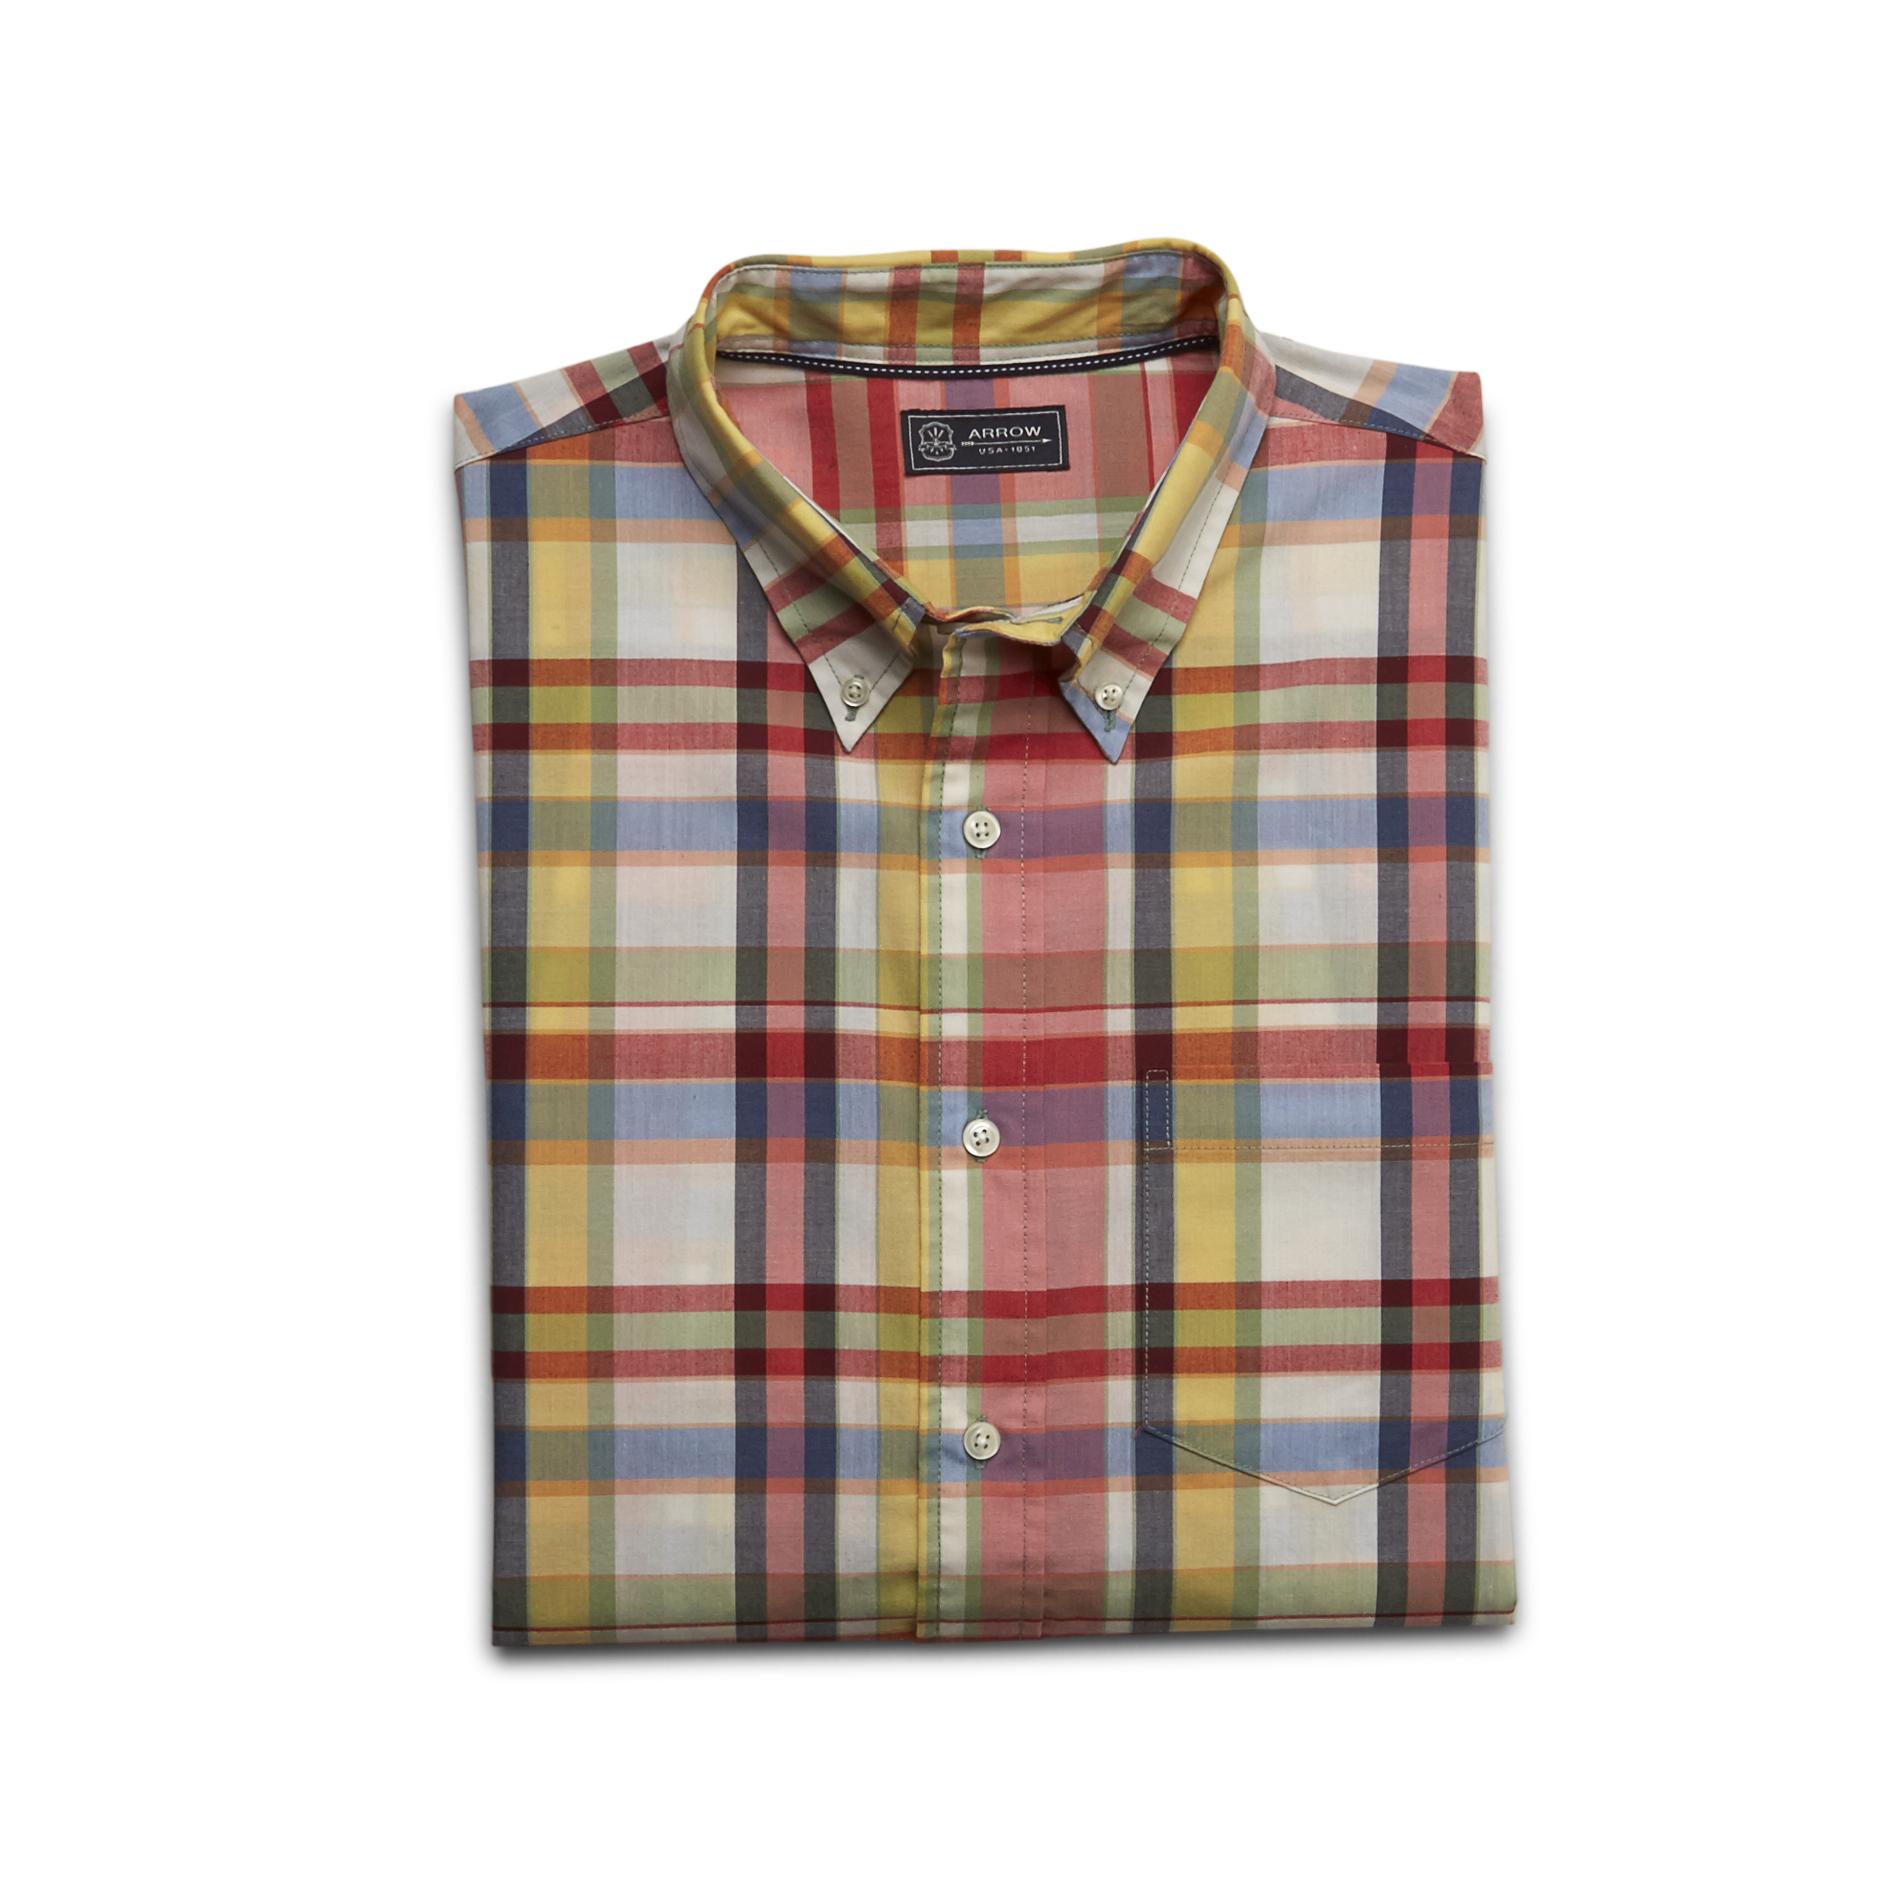 Arrow Men's Button-Front Shirt - Madras Plaid